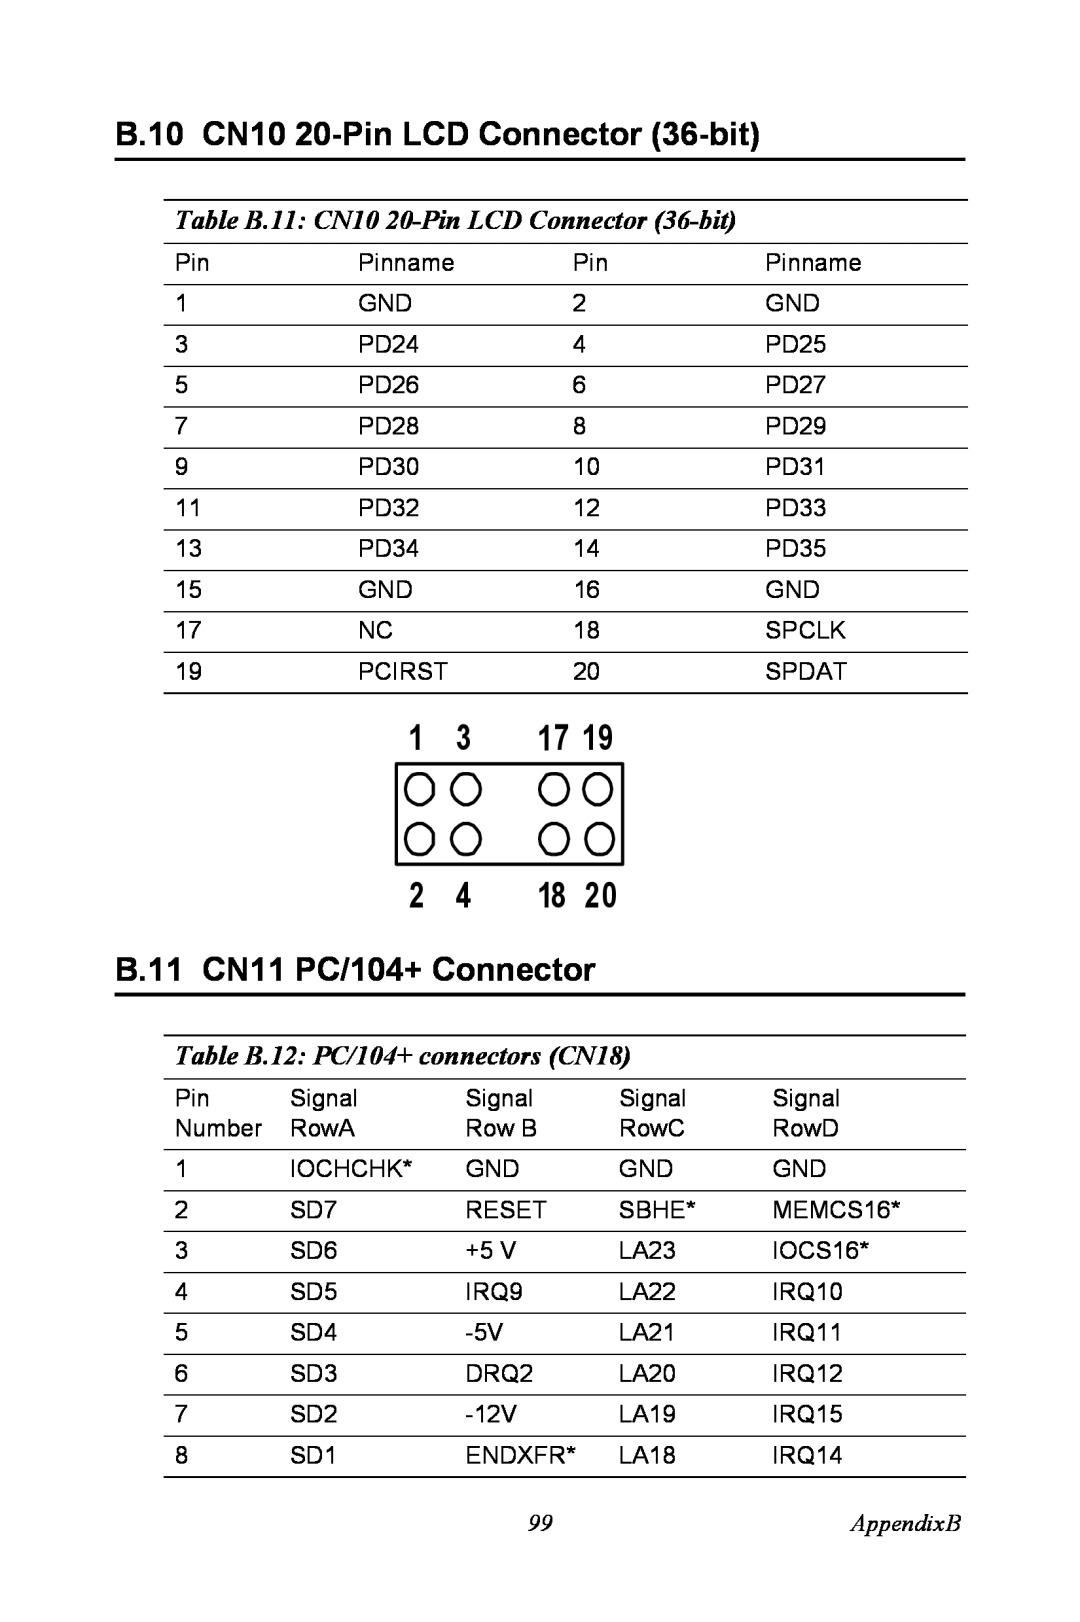 Intel PCM-3370 B.10 CN10 20-Pin LCD Connector 36-bit, B.11 CN11 PC/104+ Connector, Table B.12 PC/104+ connectors CN18 